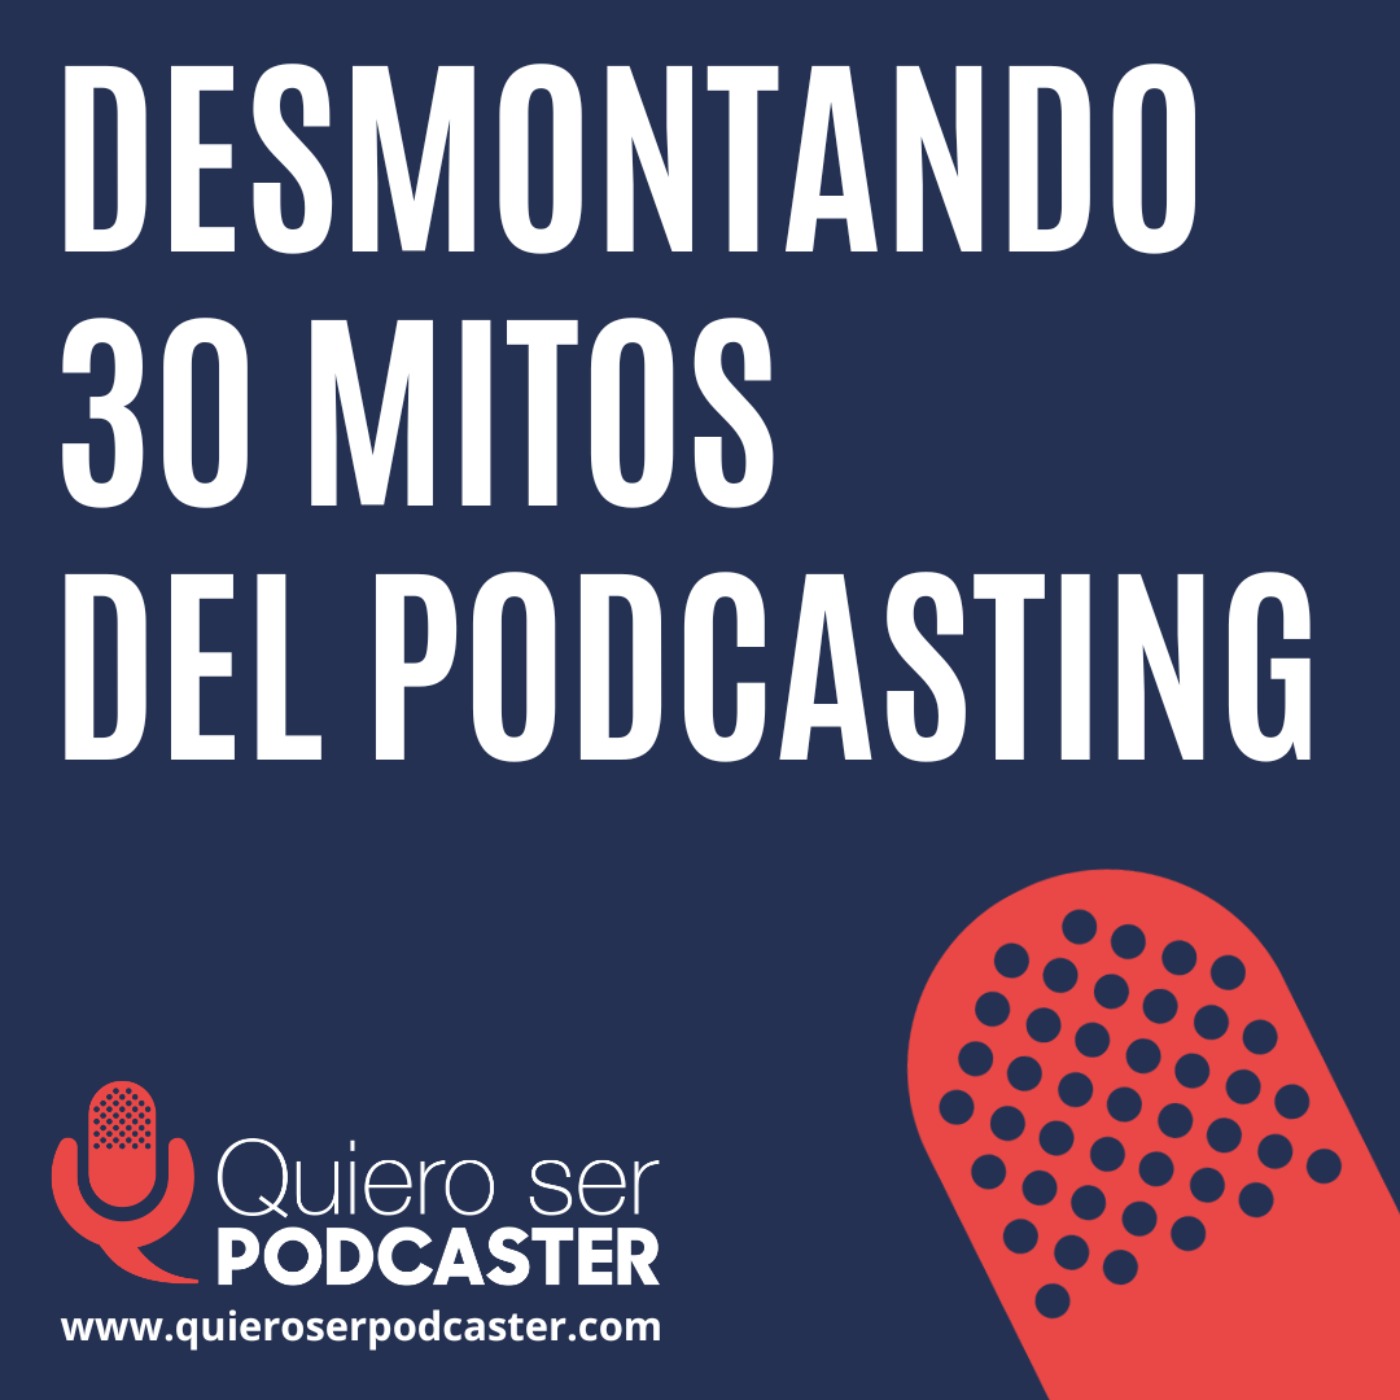 Desmontando 30 mitos del podcasting